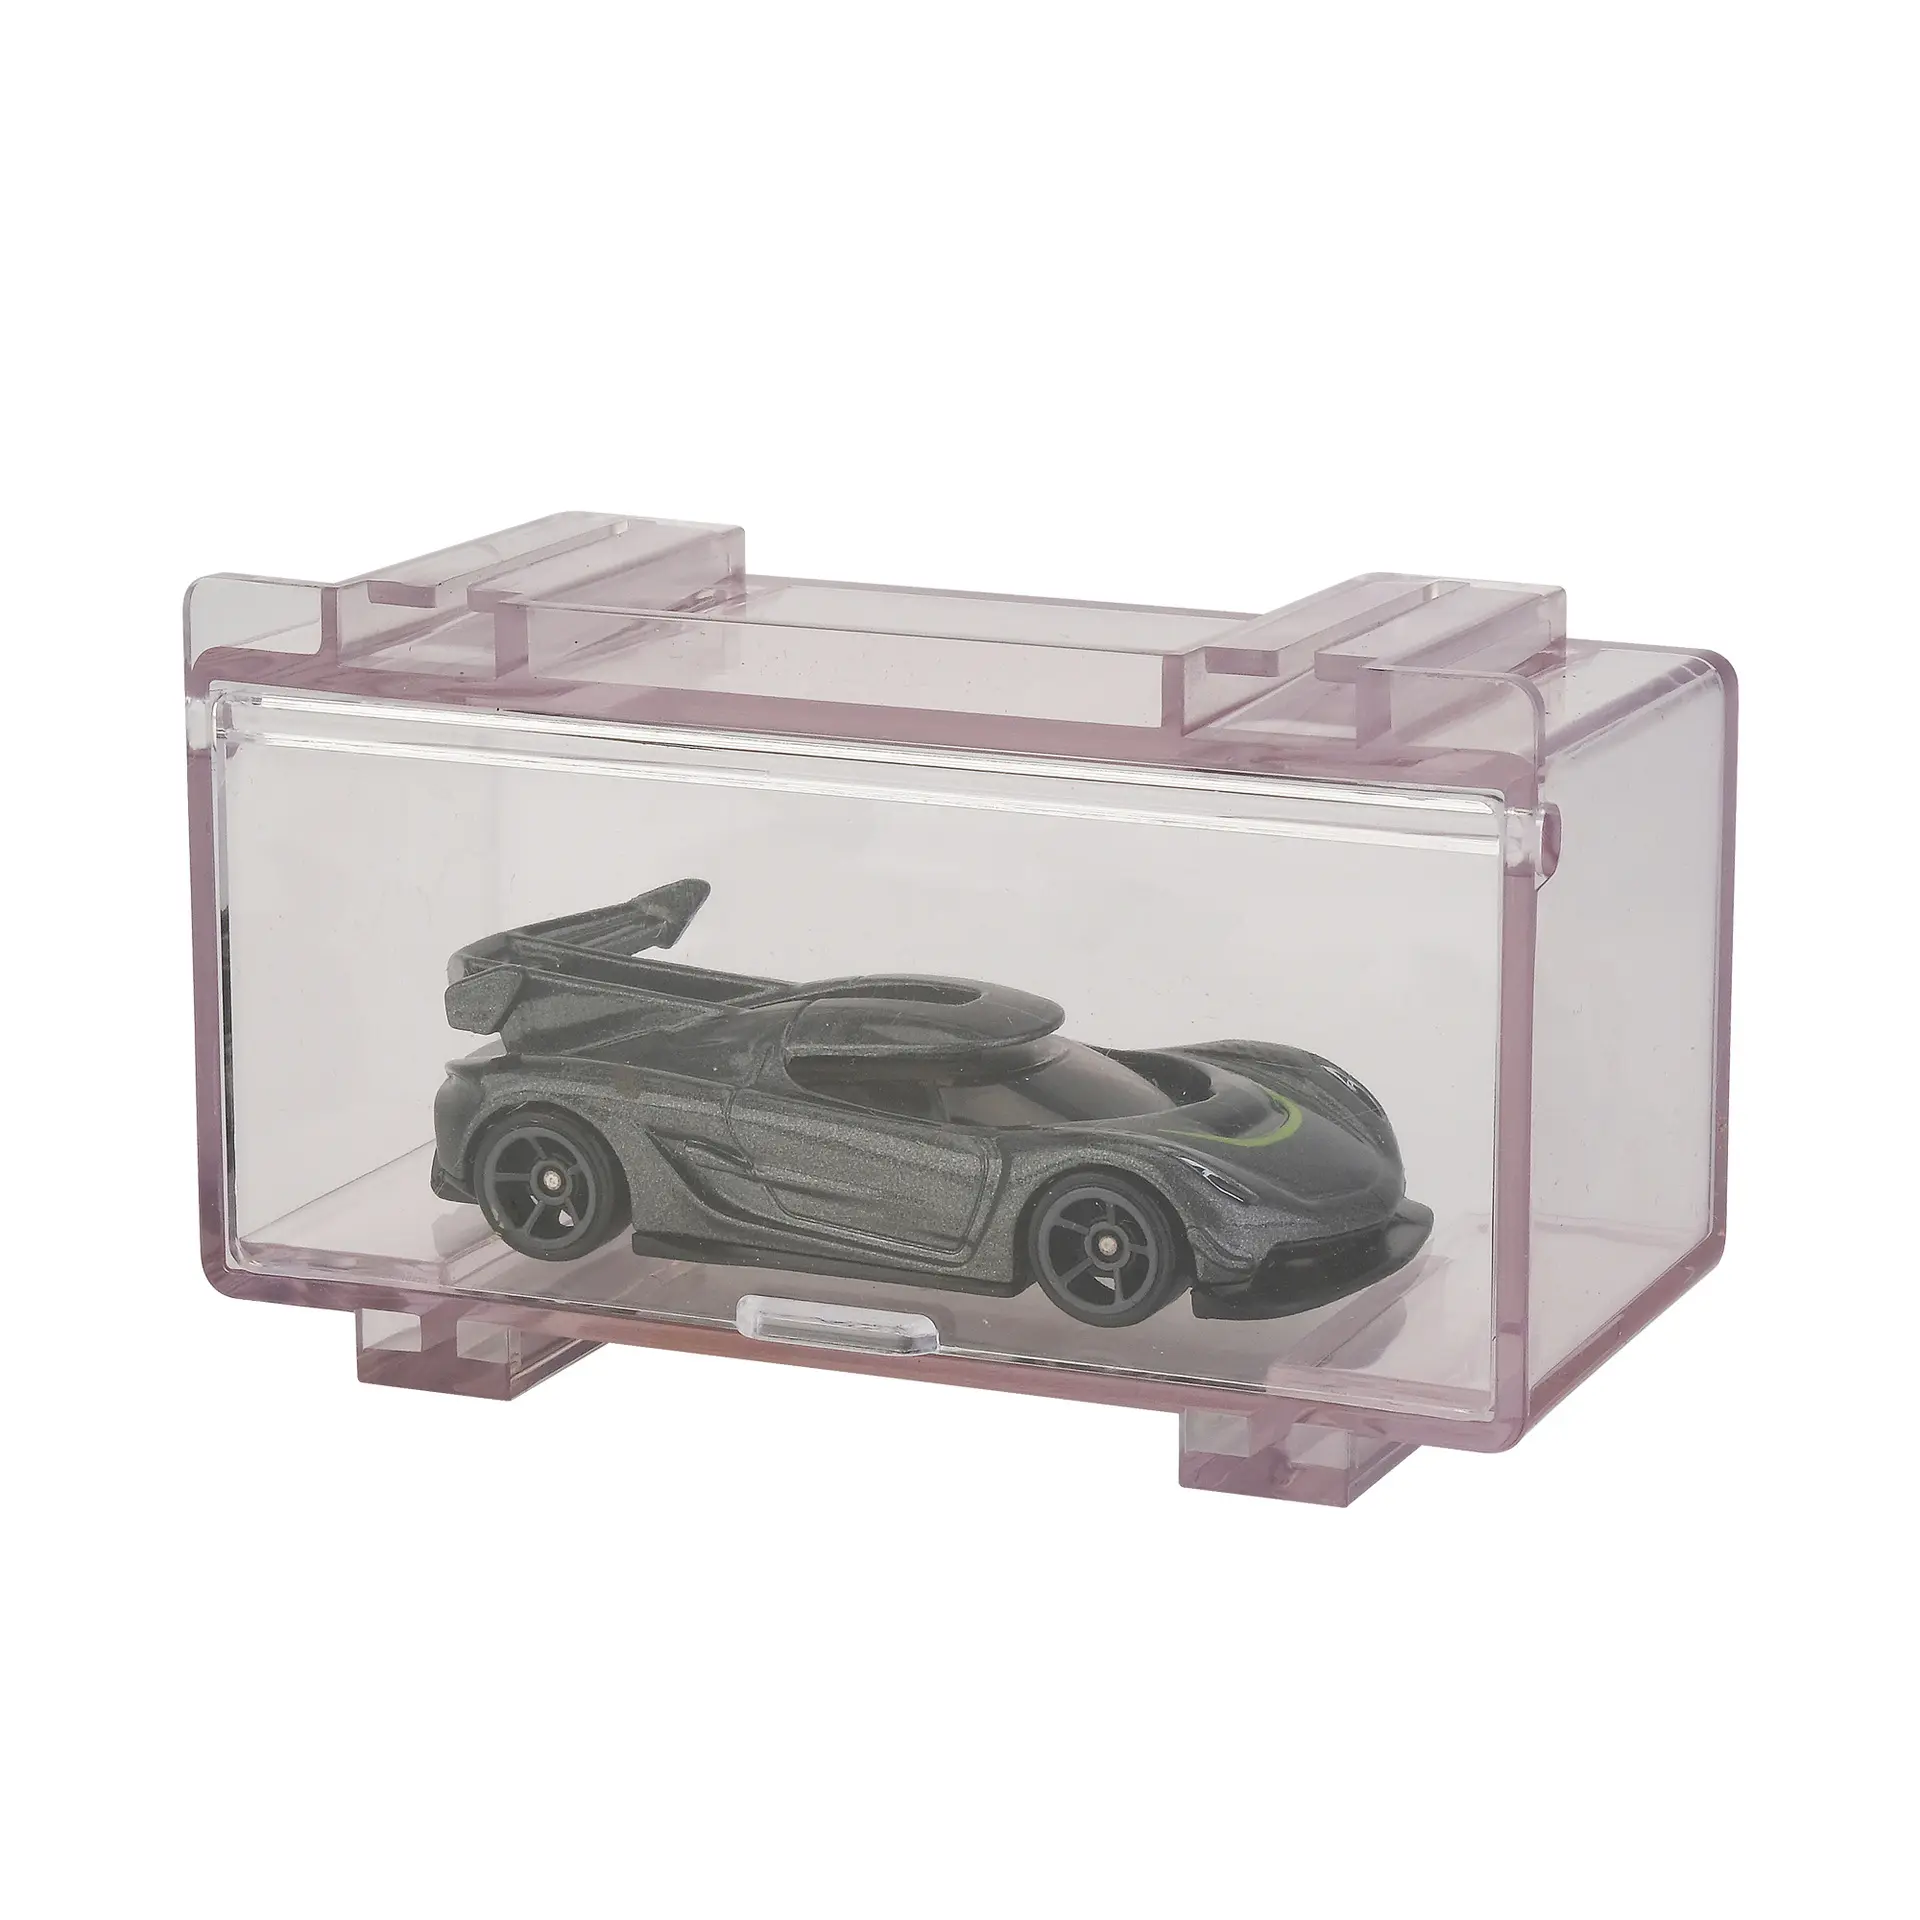 Transparente Kunststoffs chutz vitrine Acryl Hot Wheels Aufbewahrung sbox